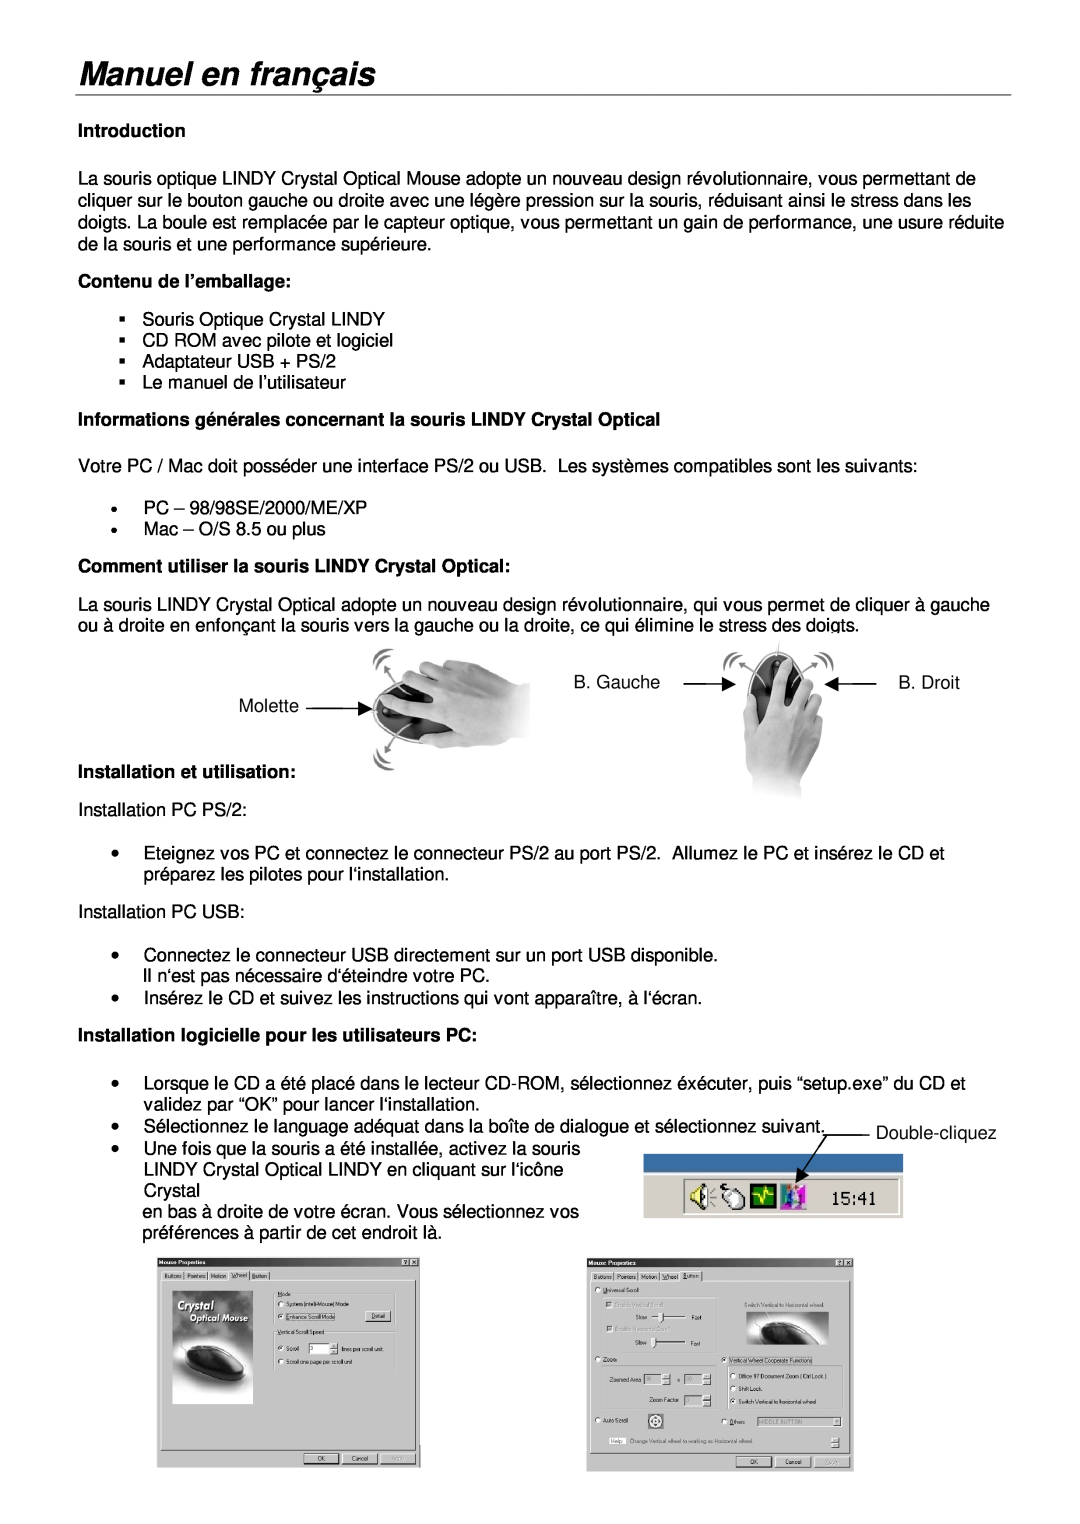 Lindy 20599 Manuel en franç ais, Introduction, Contenu de l’emballage, Comment utiliser la souris LINDY Crystal Optical 